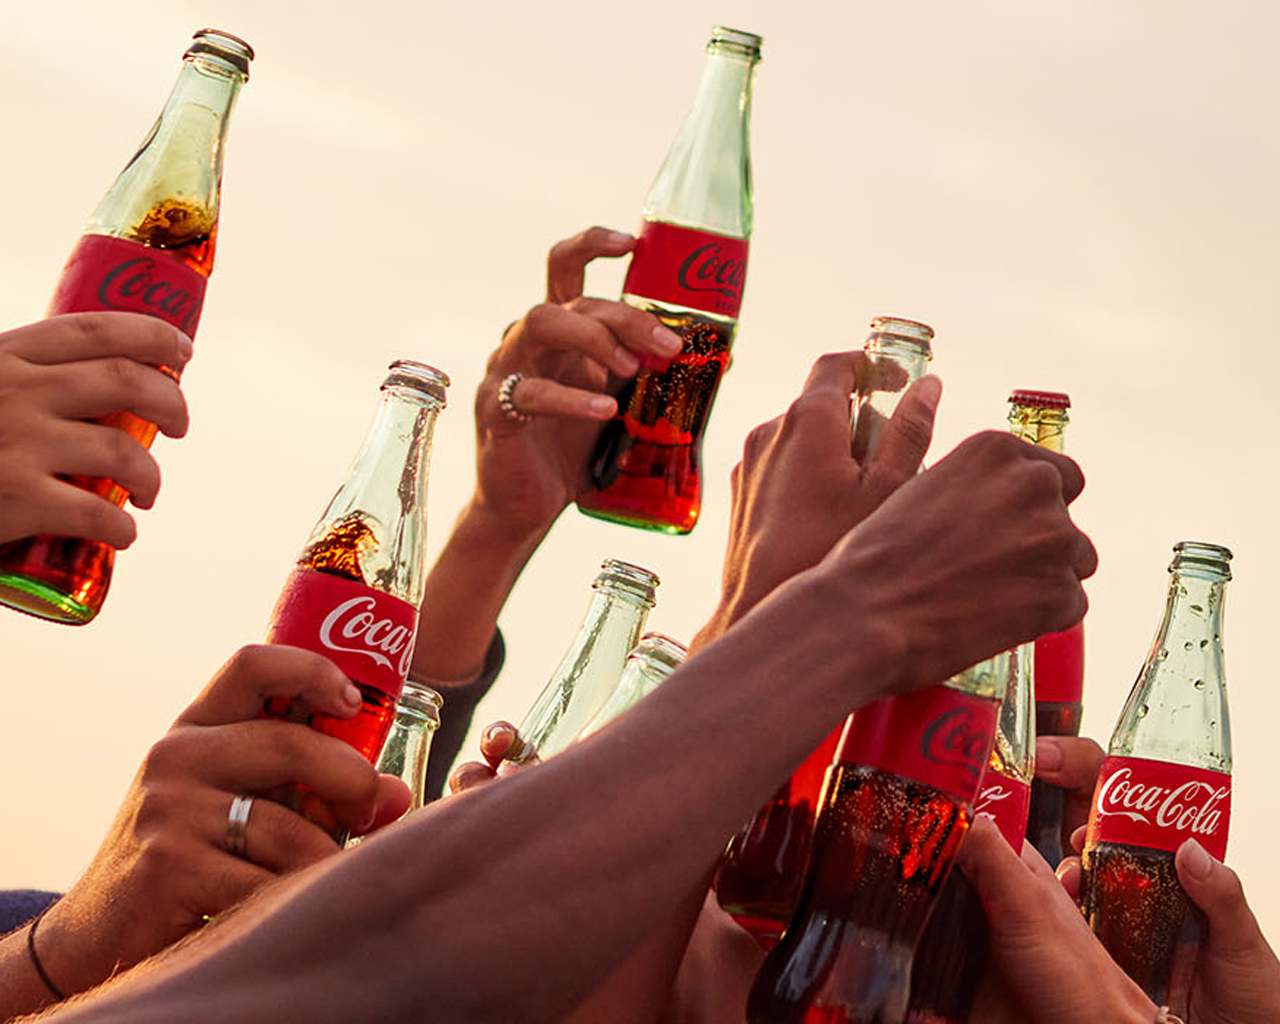 Coca-Cola üvegek a magasba tartva